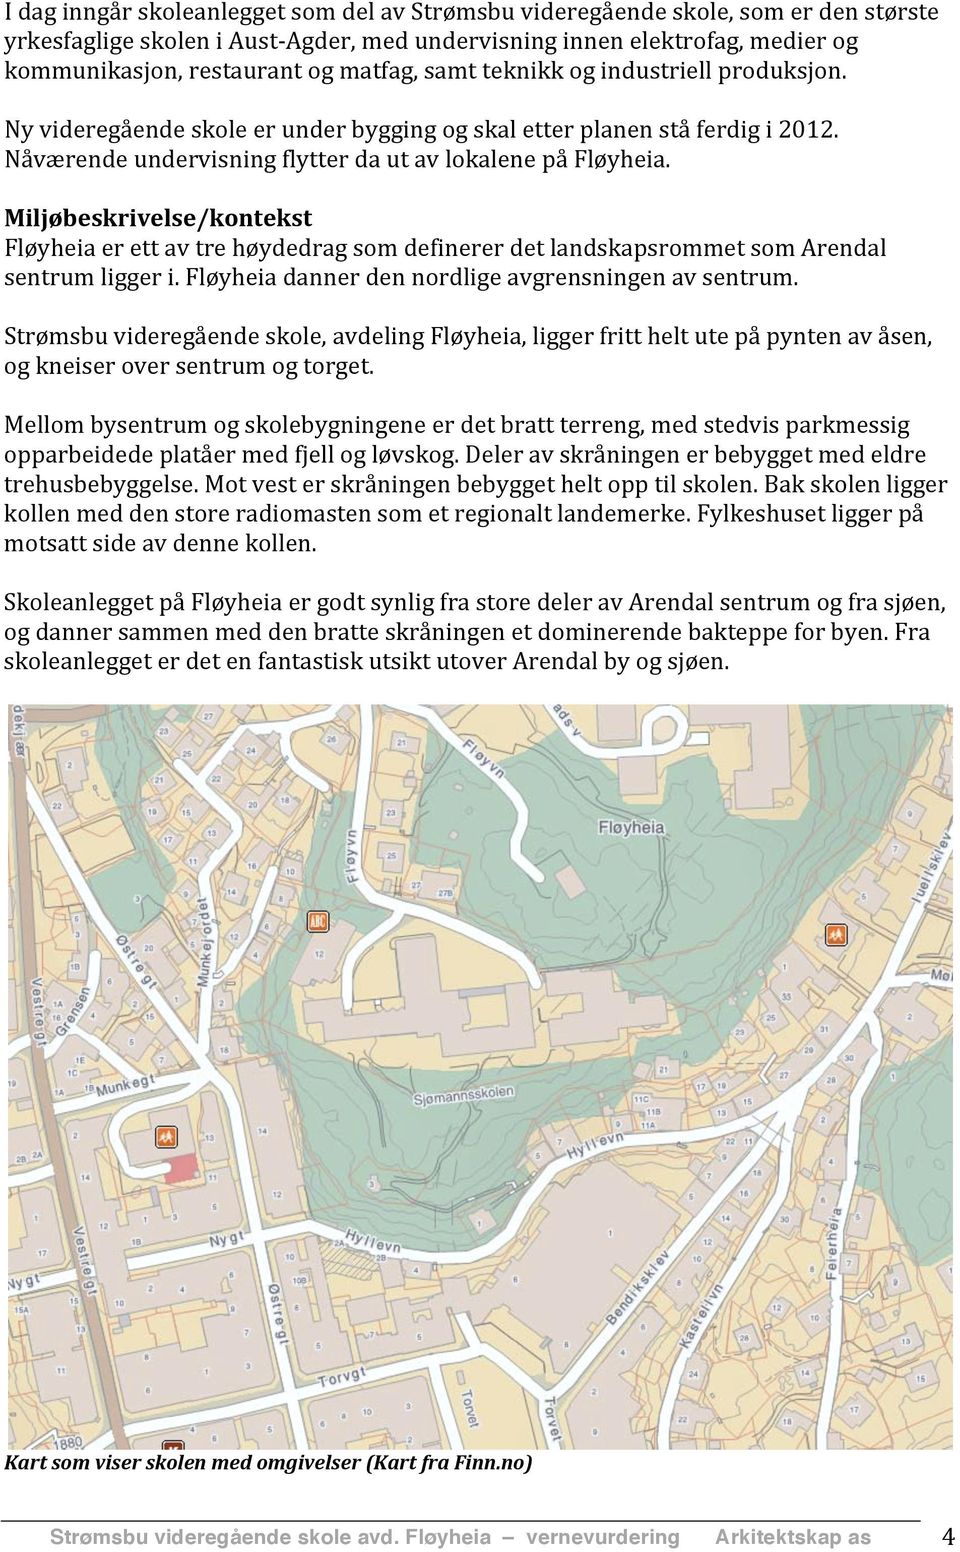 Miljøbeskrivelse/kontekst Fløyheia er ett av tre høydedrag som definerer det landskapsrommet som Arendal sentrum ligger i. Fløyheia danner den nordlige avgrensningen av sentrum.